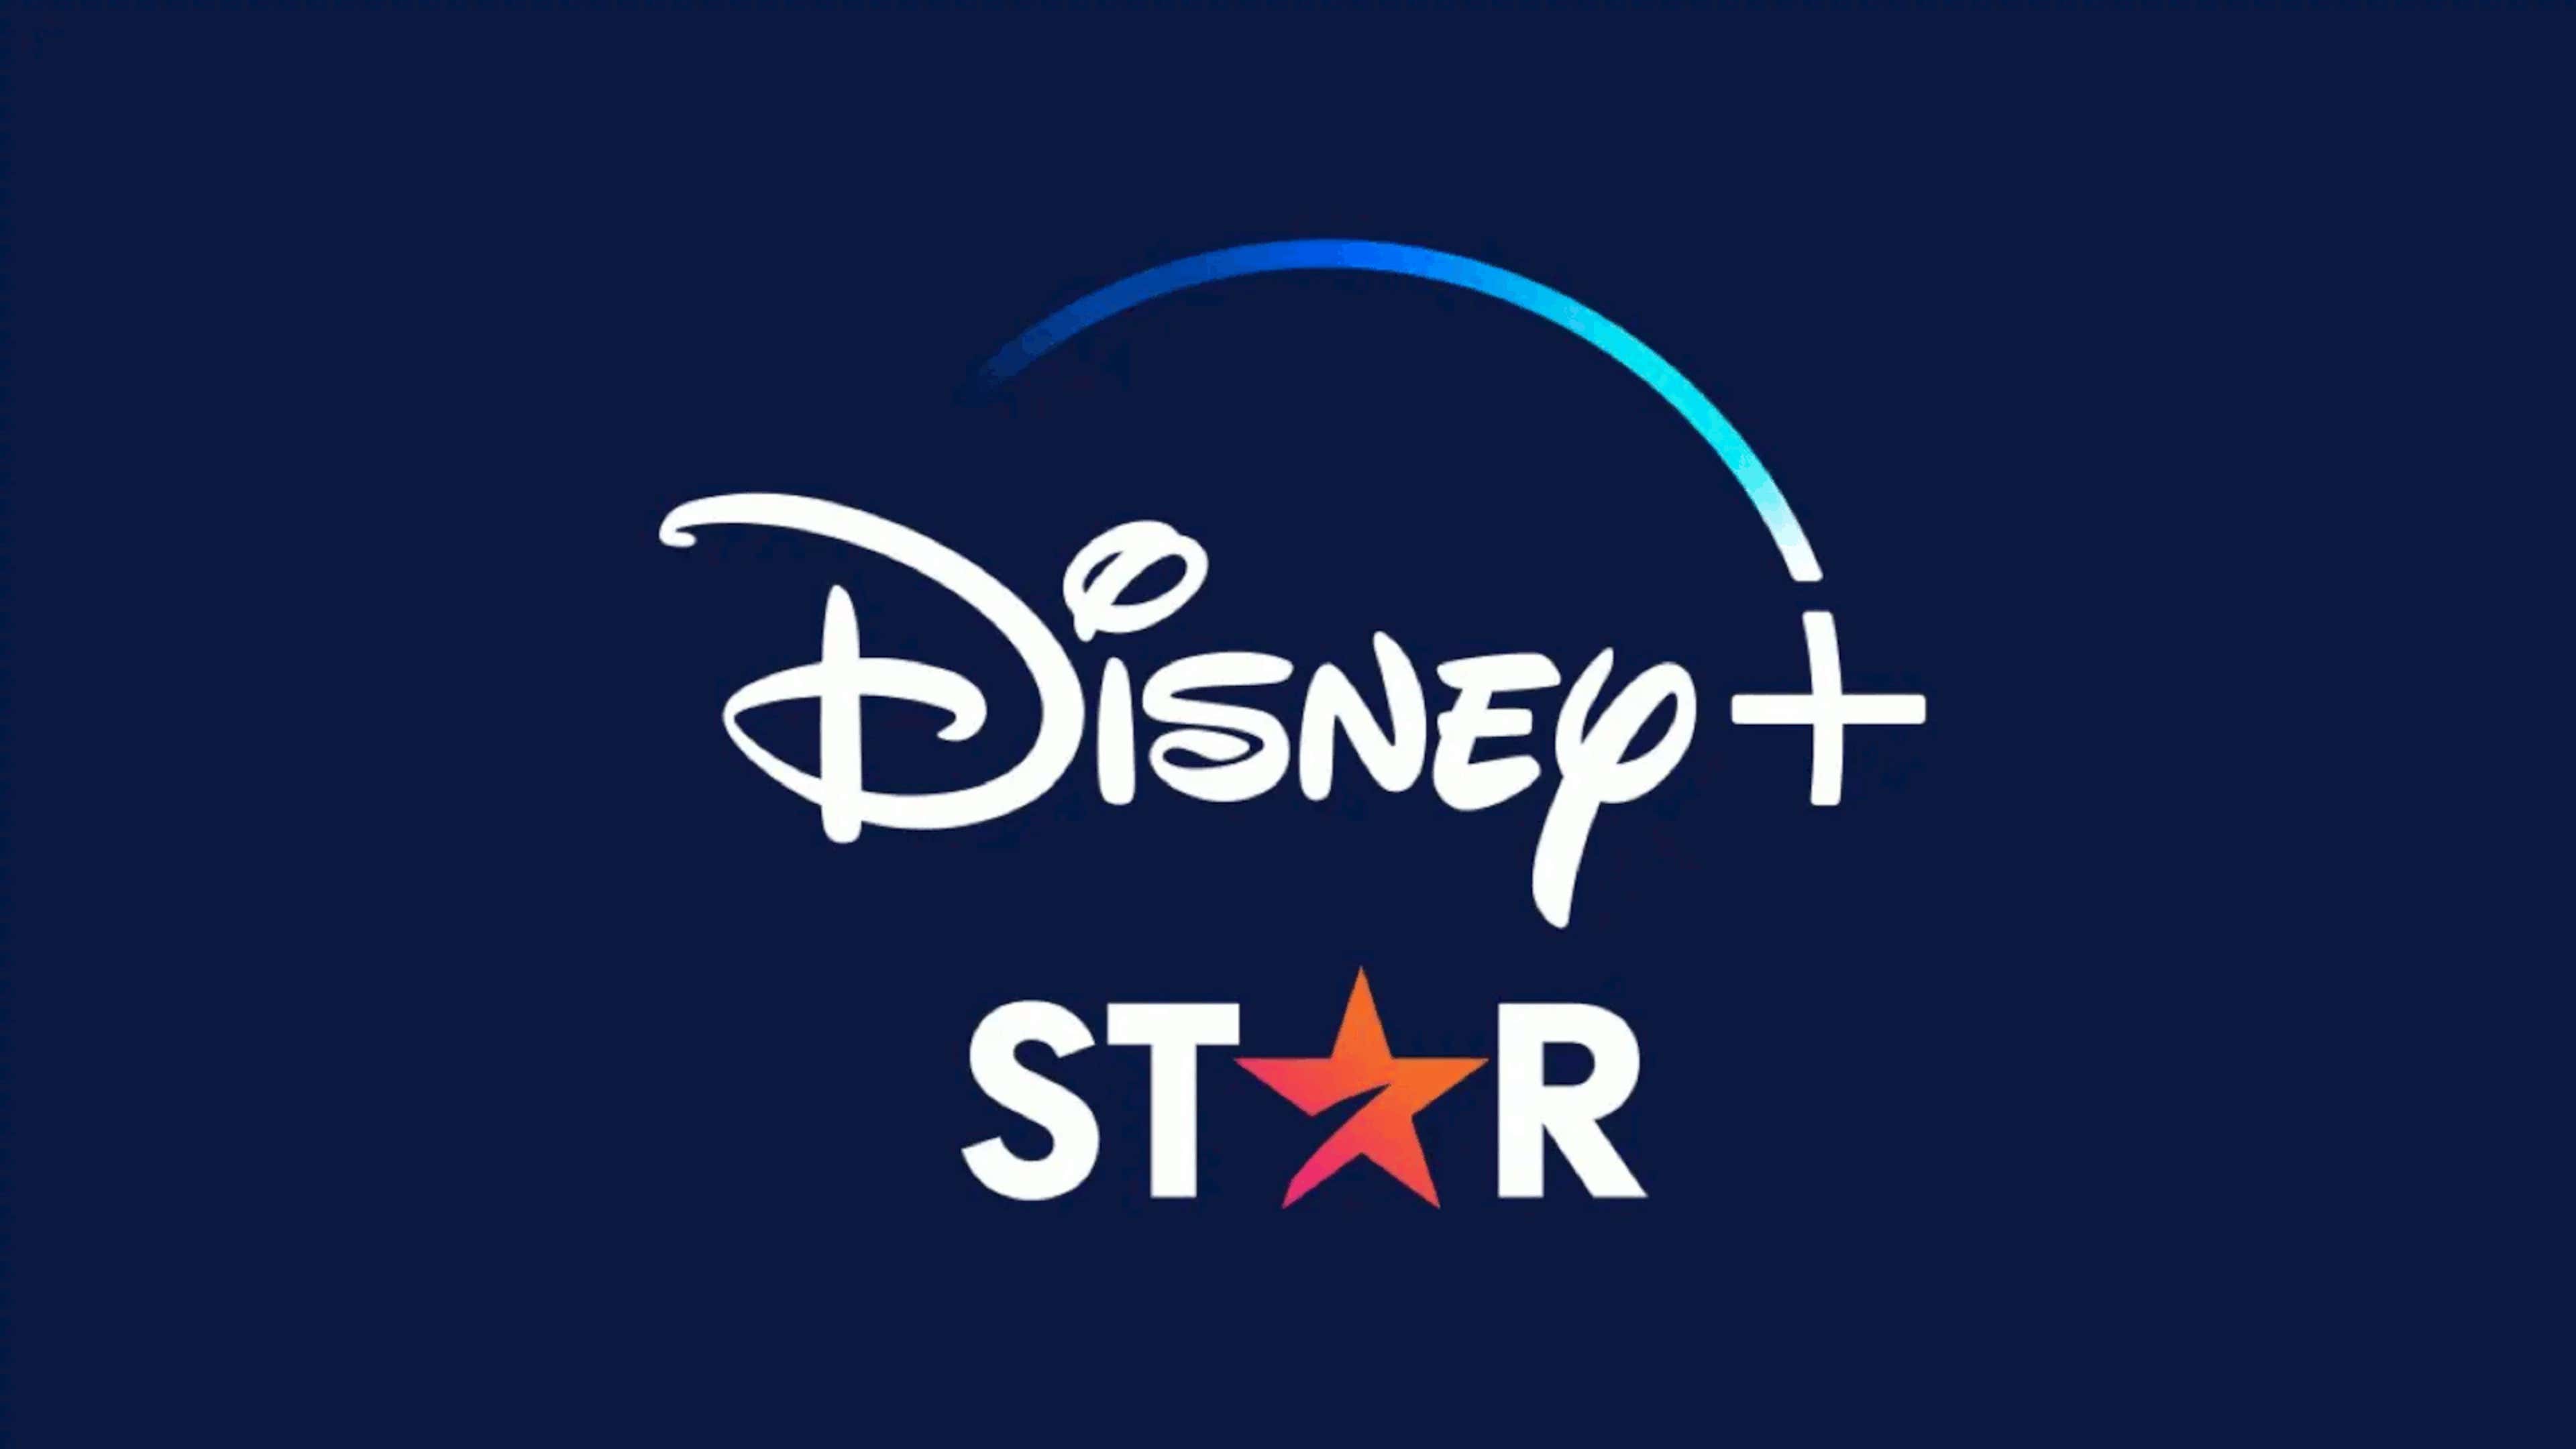 Star+: como funciona o streaming da Disney e quais campeonatos de futebol  são transmitidos